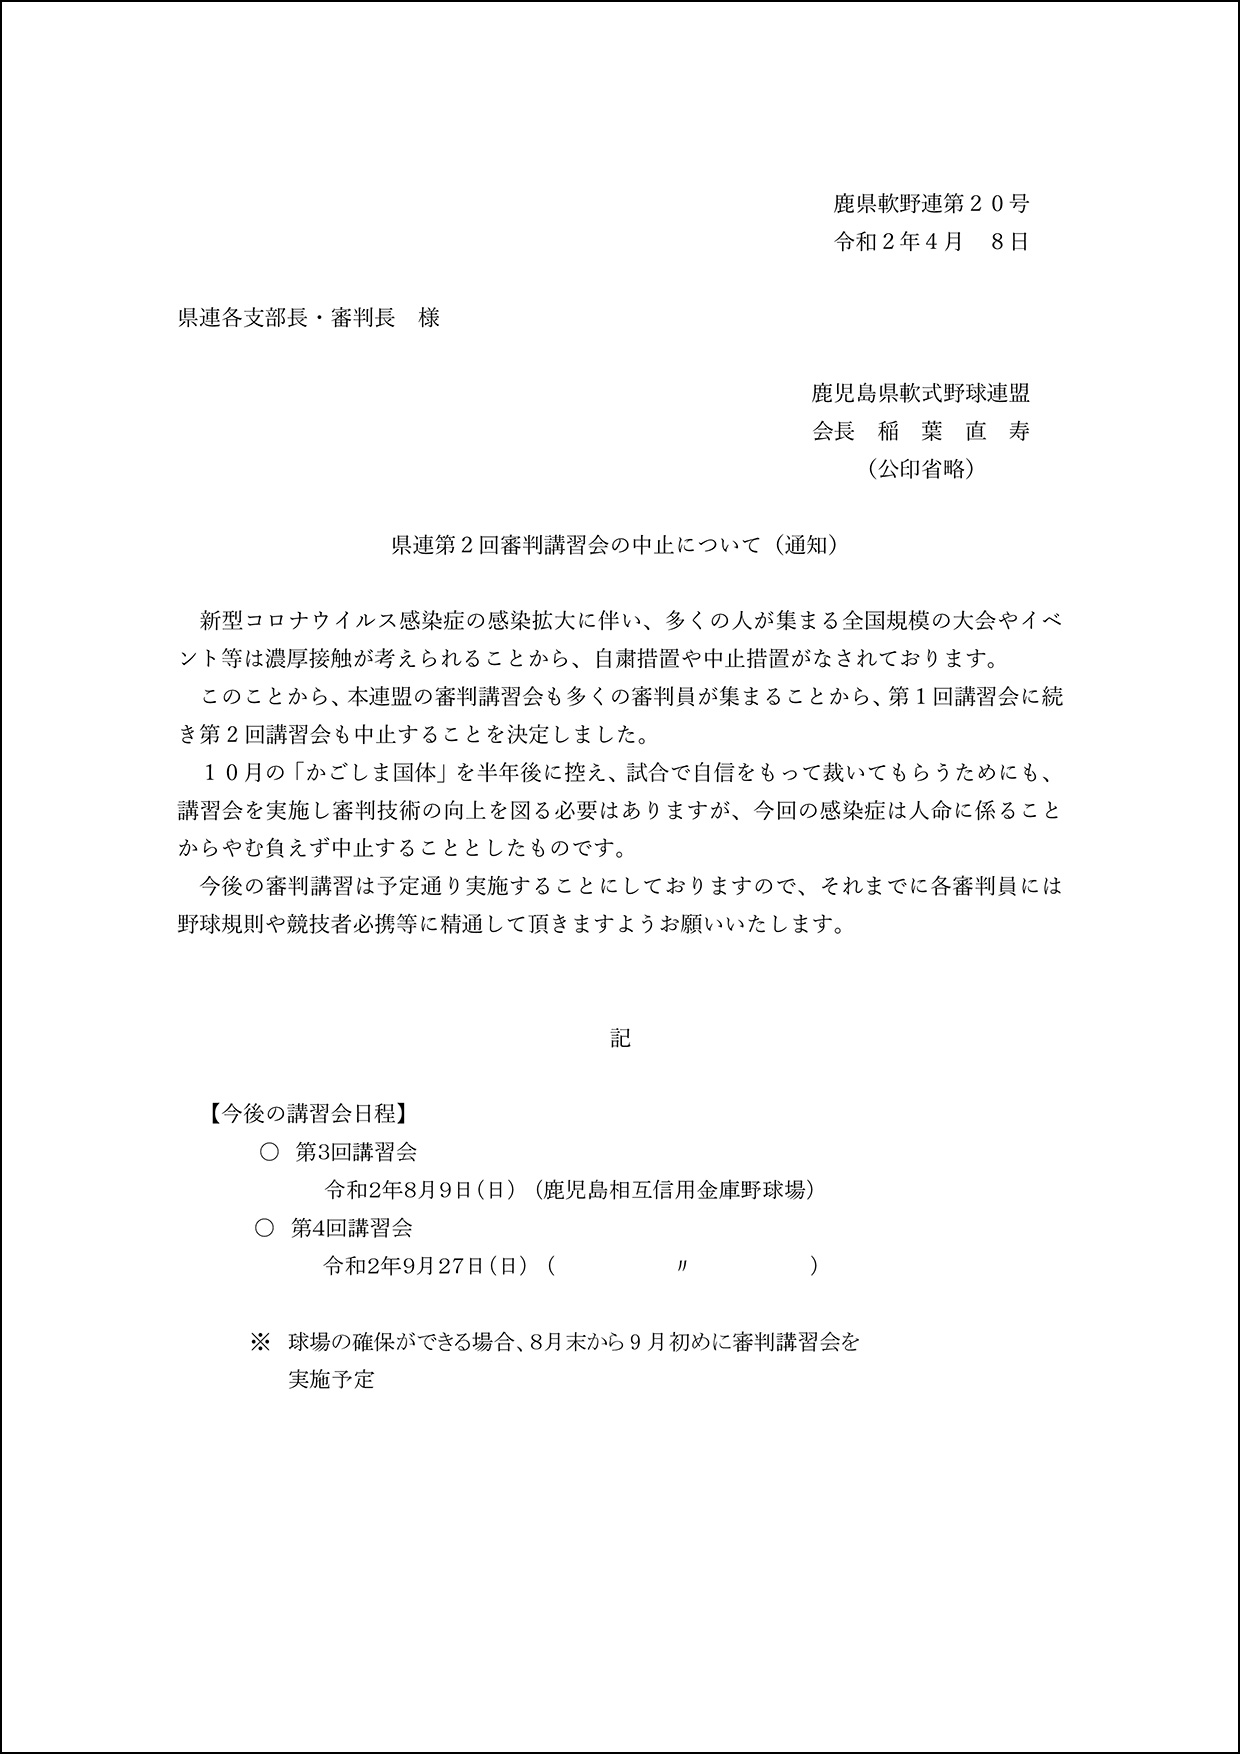 【通知】県連第2回審判講習会の中止について